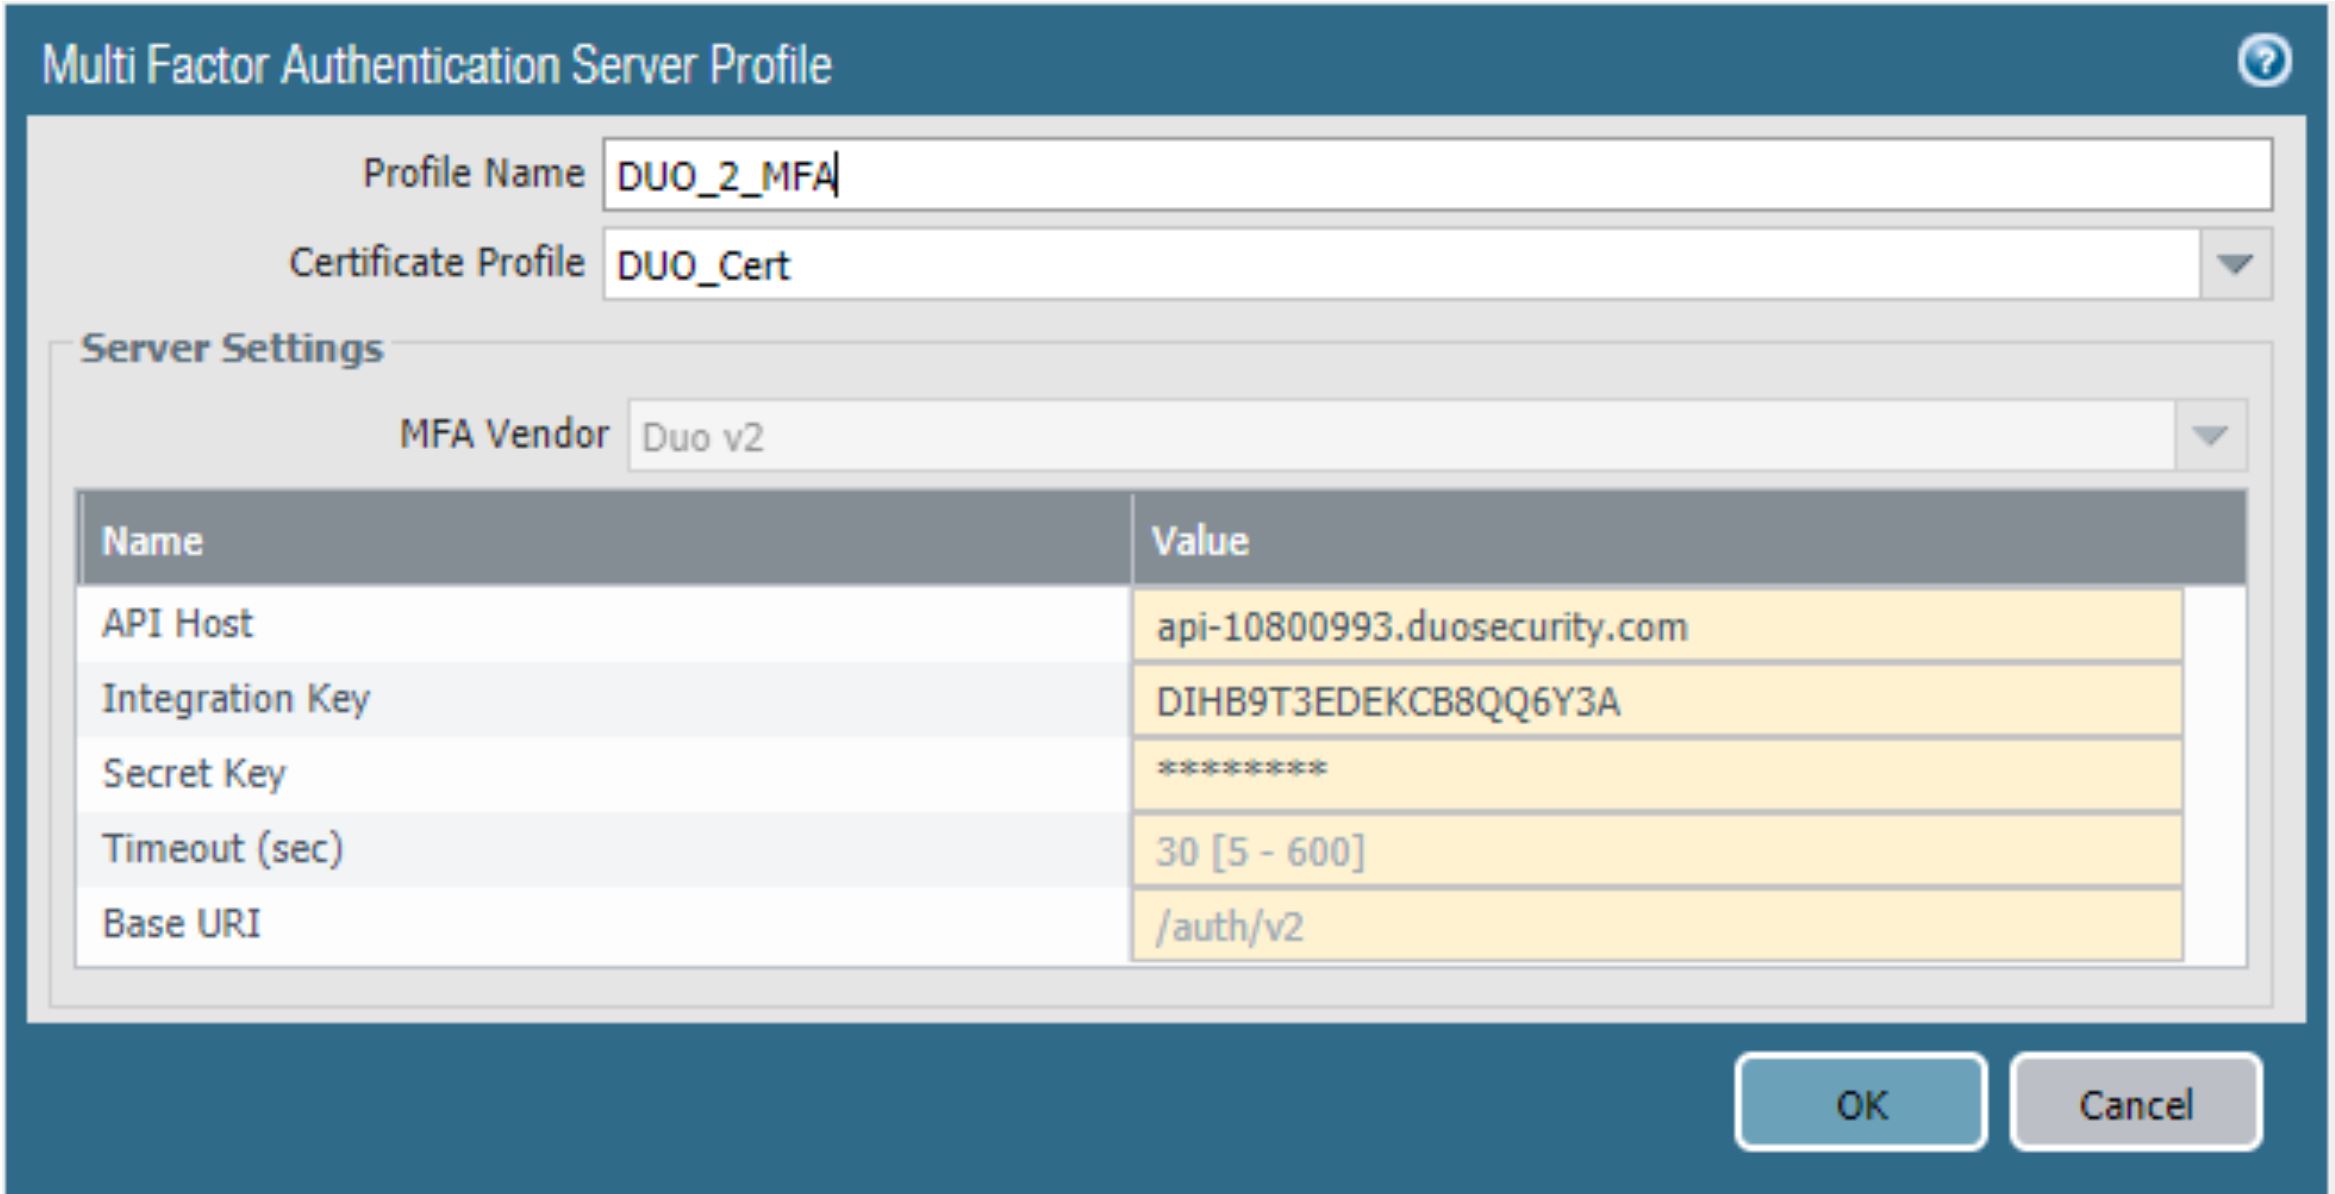 Esta imagen muestra el perfil del servidor de la autenticación multifactor